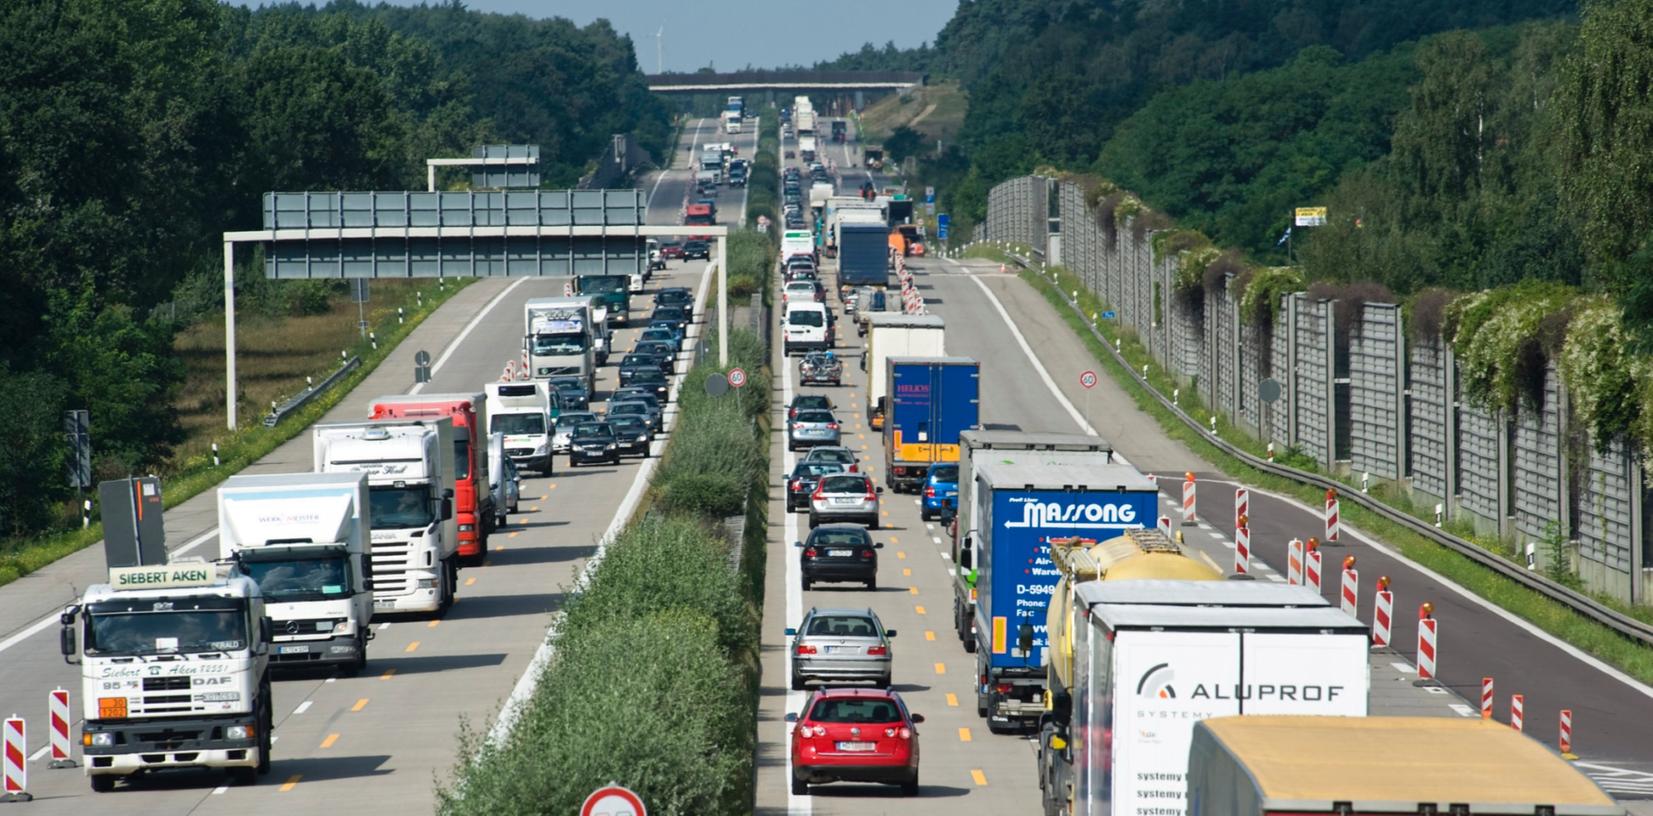 Wer auf Autobahnen in Bayern unterwegs ist, muss damit rechnen, dass die Polizei sein Auto-Kennzeichen scannt und überprüft.